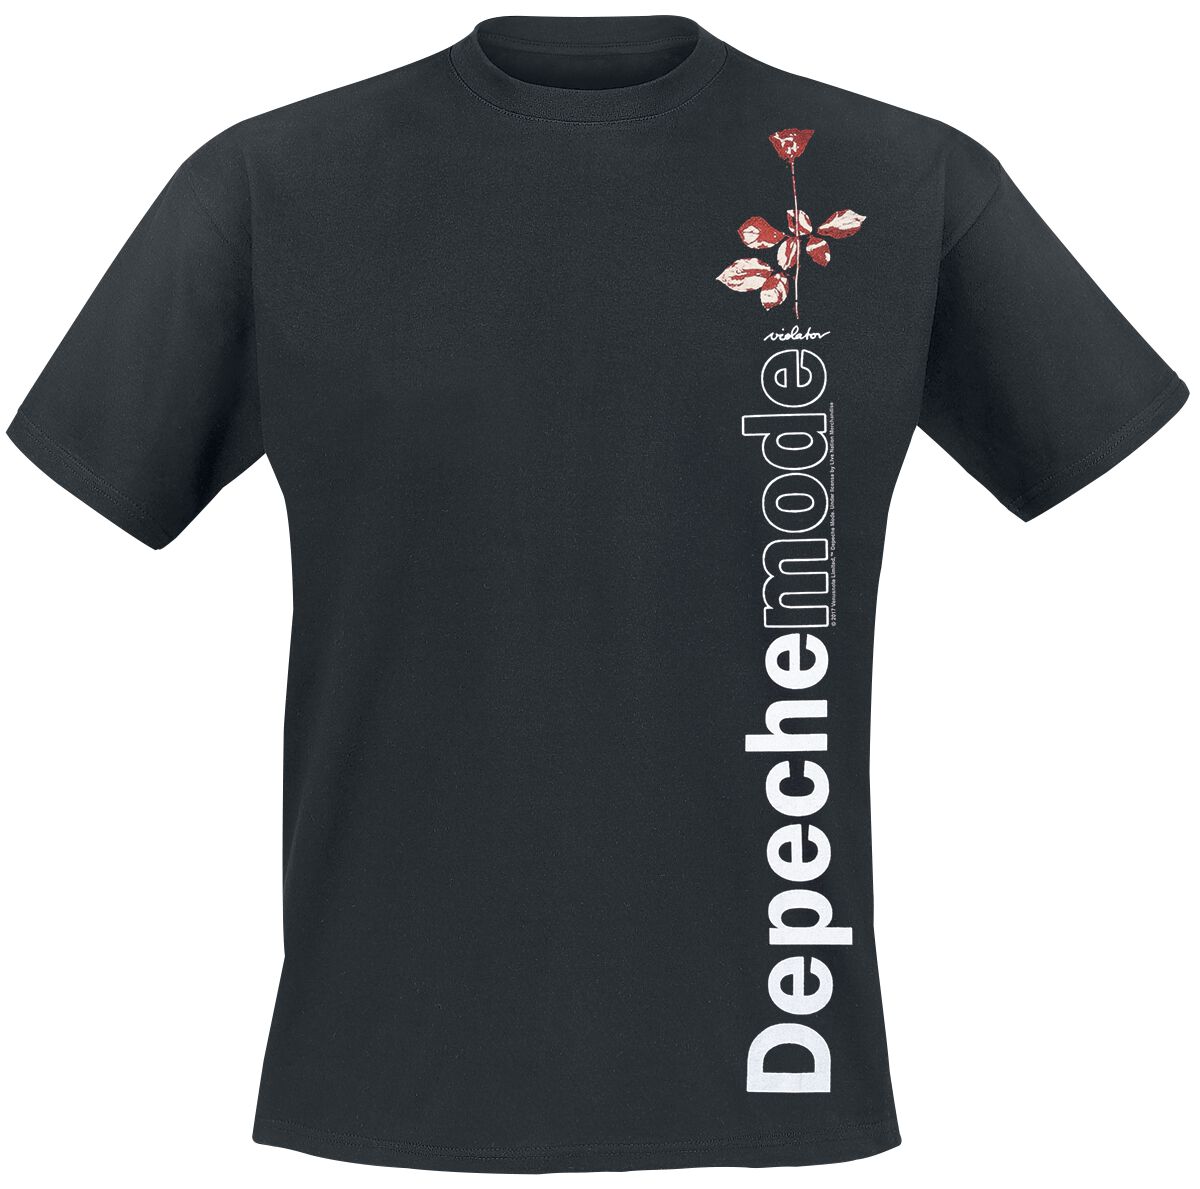 Depeche Mode T-Shirt - Violator Side Rose - S bis XXL - für Männer - Größe XL - schwarz  - Lizenziertes Merchandise!